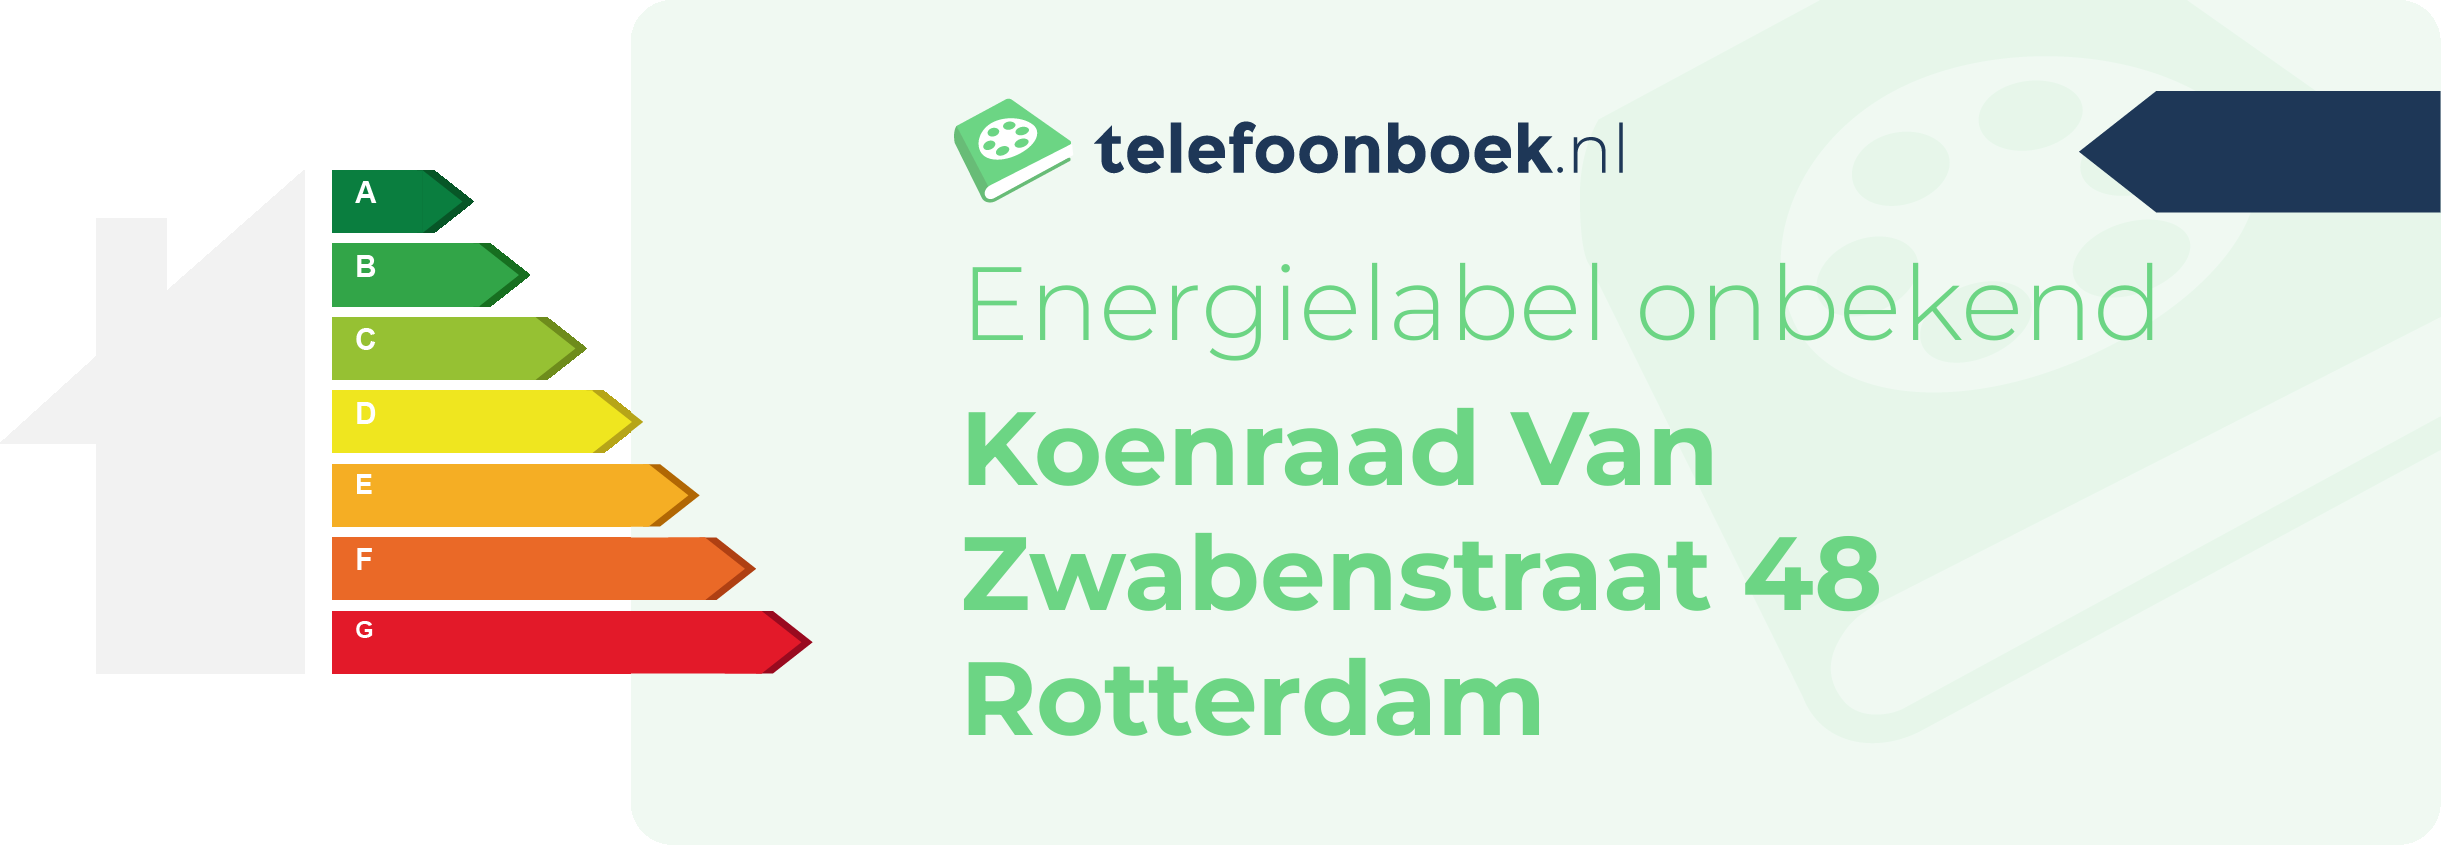 Energielabel Koenraad Van Zwabenstraat 48 Rotterdam